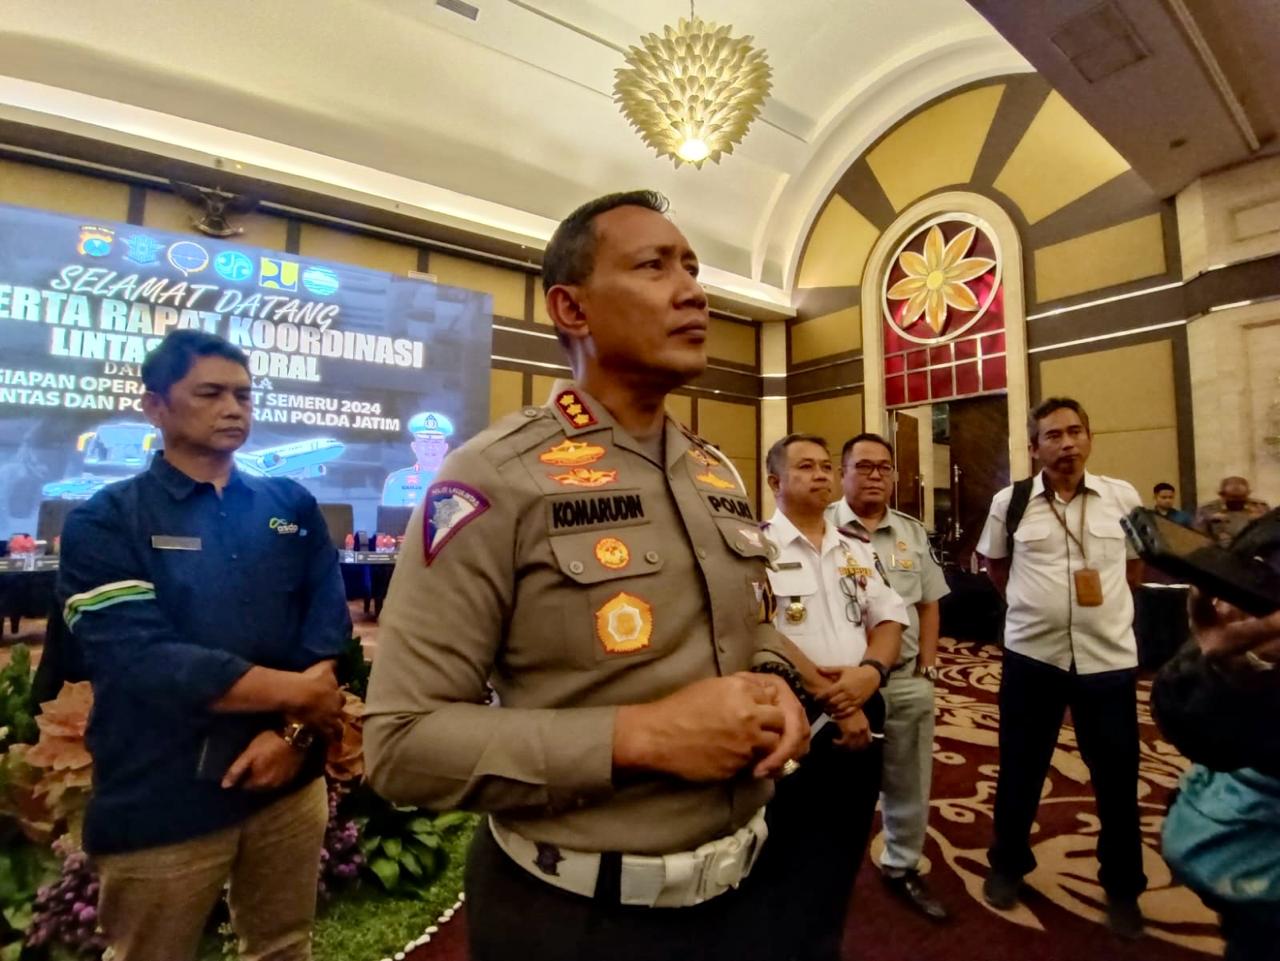 Kombes Pol Komarudin Ditlantas Polda Jatim waktu ditemui usai menggelar rakor Ops Semeri 2024 di Surabaya bersama sejumlah stakeholder. Foto: Istimewa.